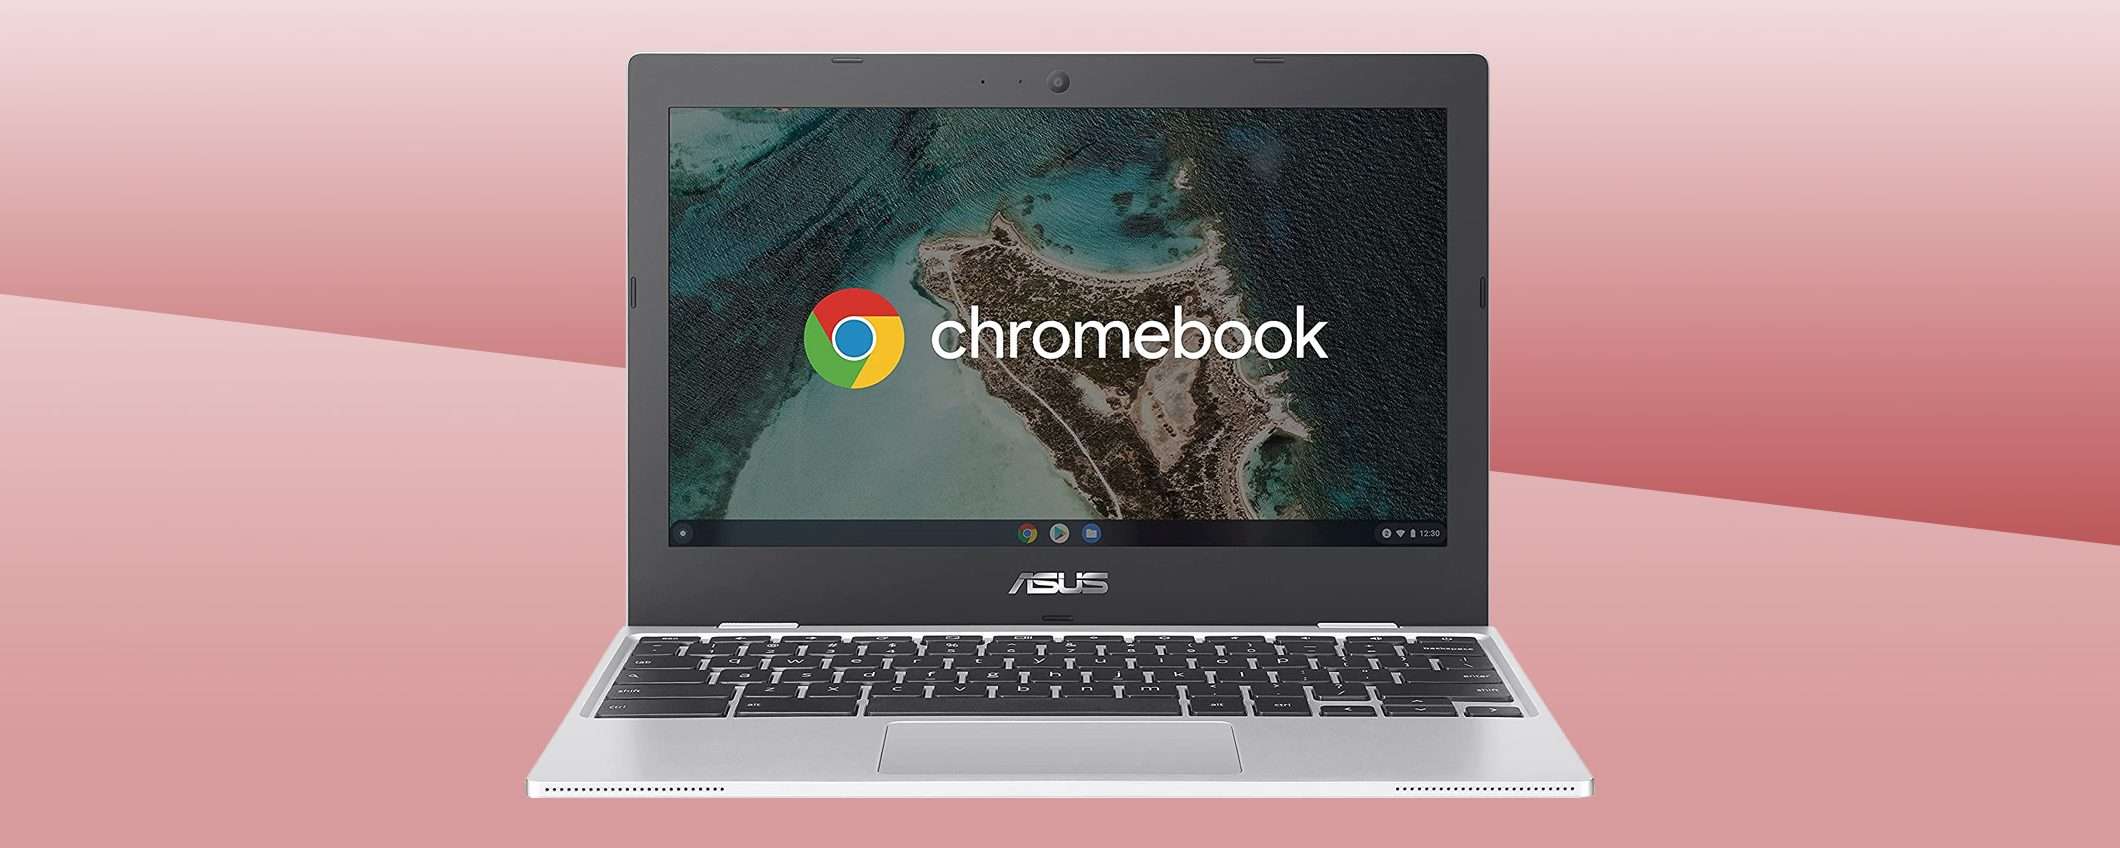 Se cerchi un Chromebook, guarda questo ASUS (sconto)